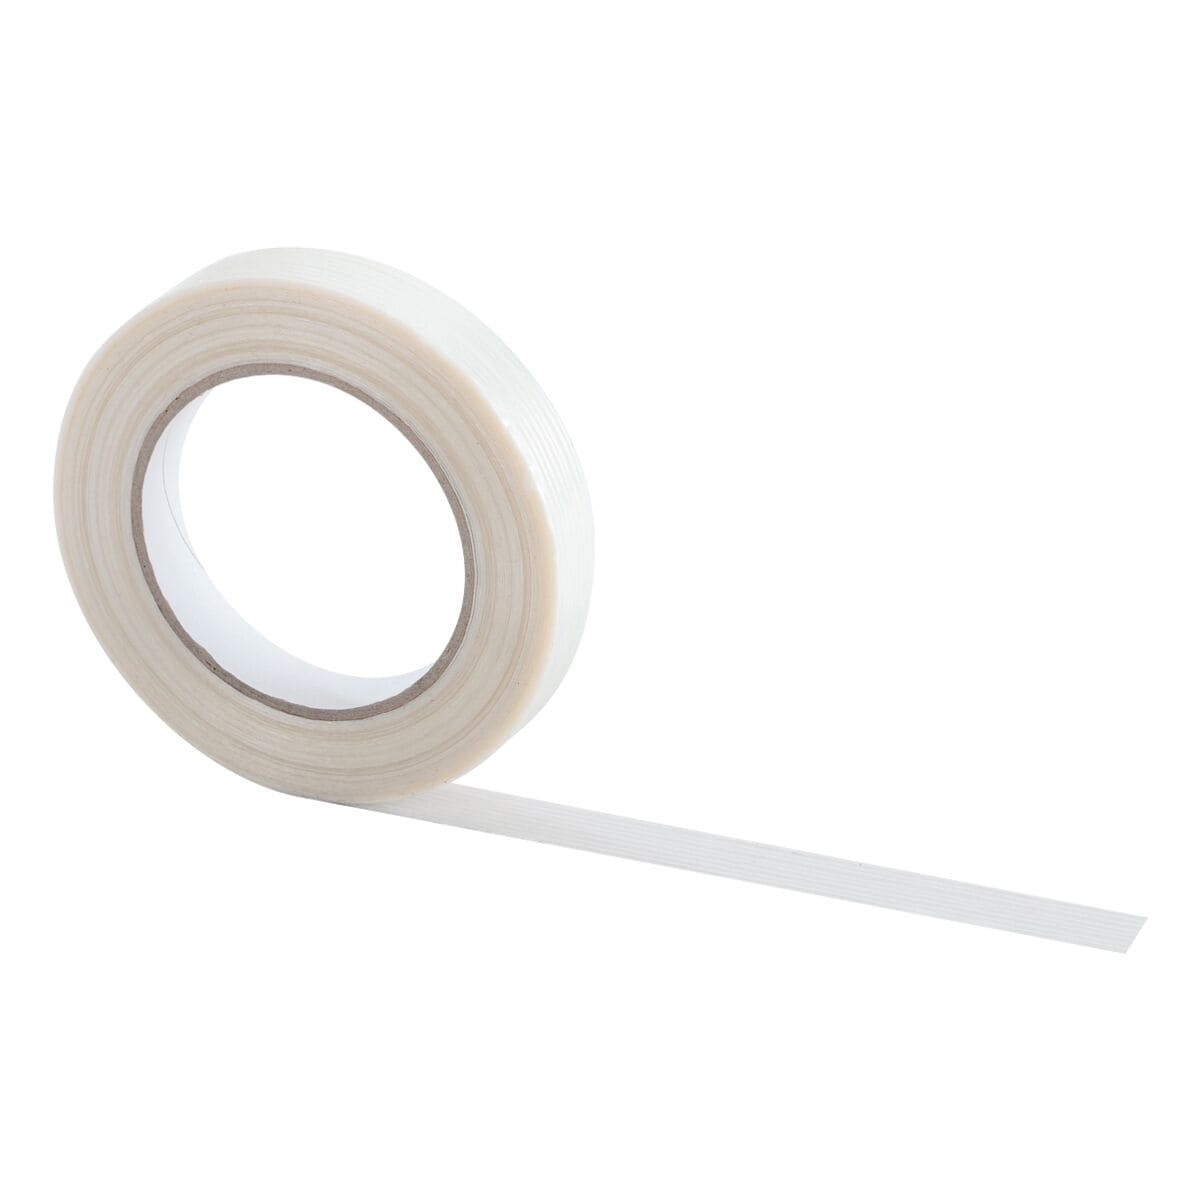 Filamentband, 19 mm breit, 50 Meter lang